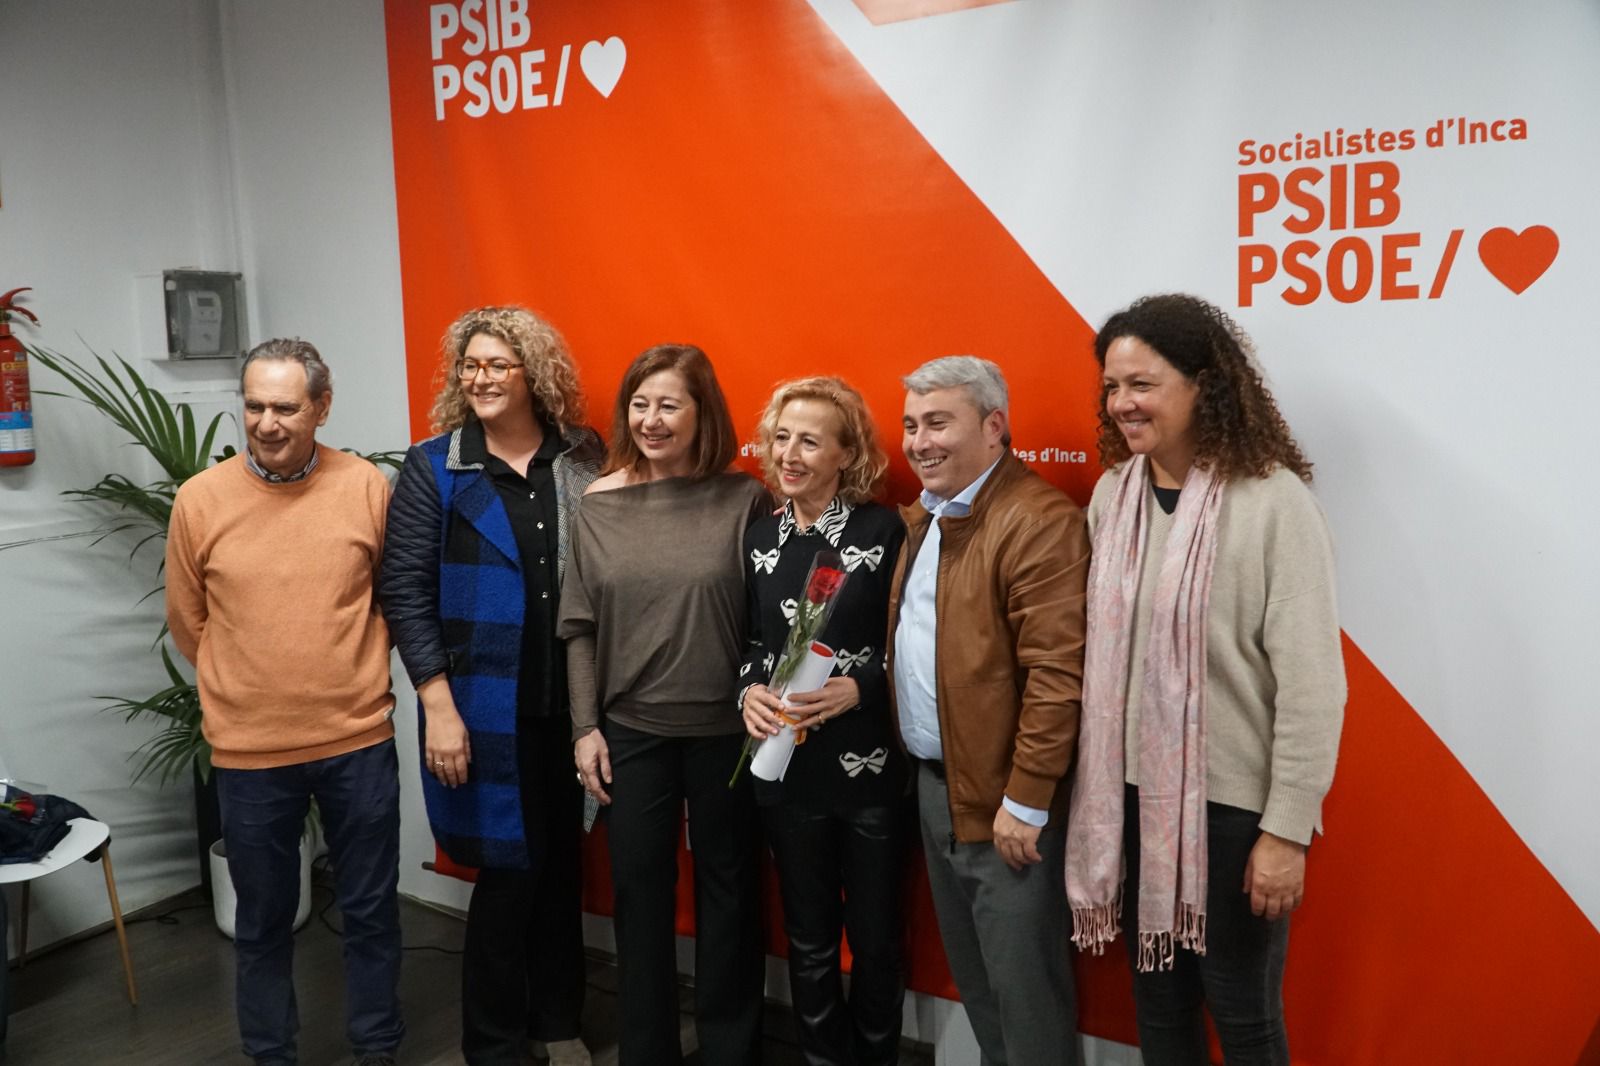 La secretaria general del PSIB-PSOE, Francina Armengol, en el 88 Aniversario de la Agrupación Socialista de Inca - PSIB-PSOE